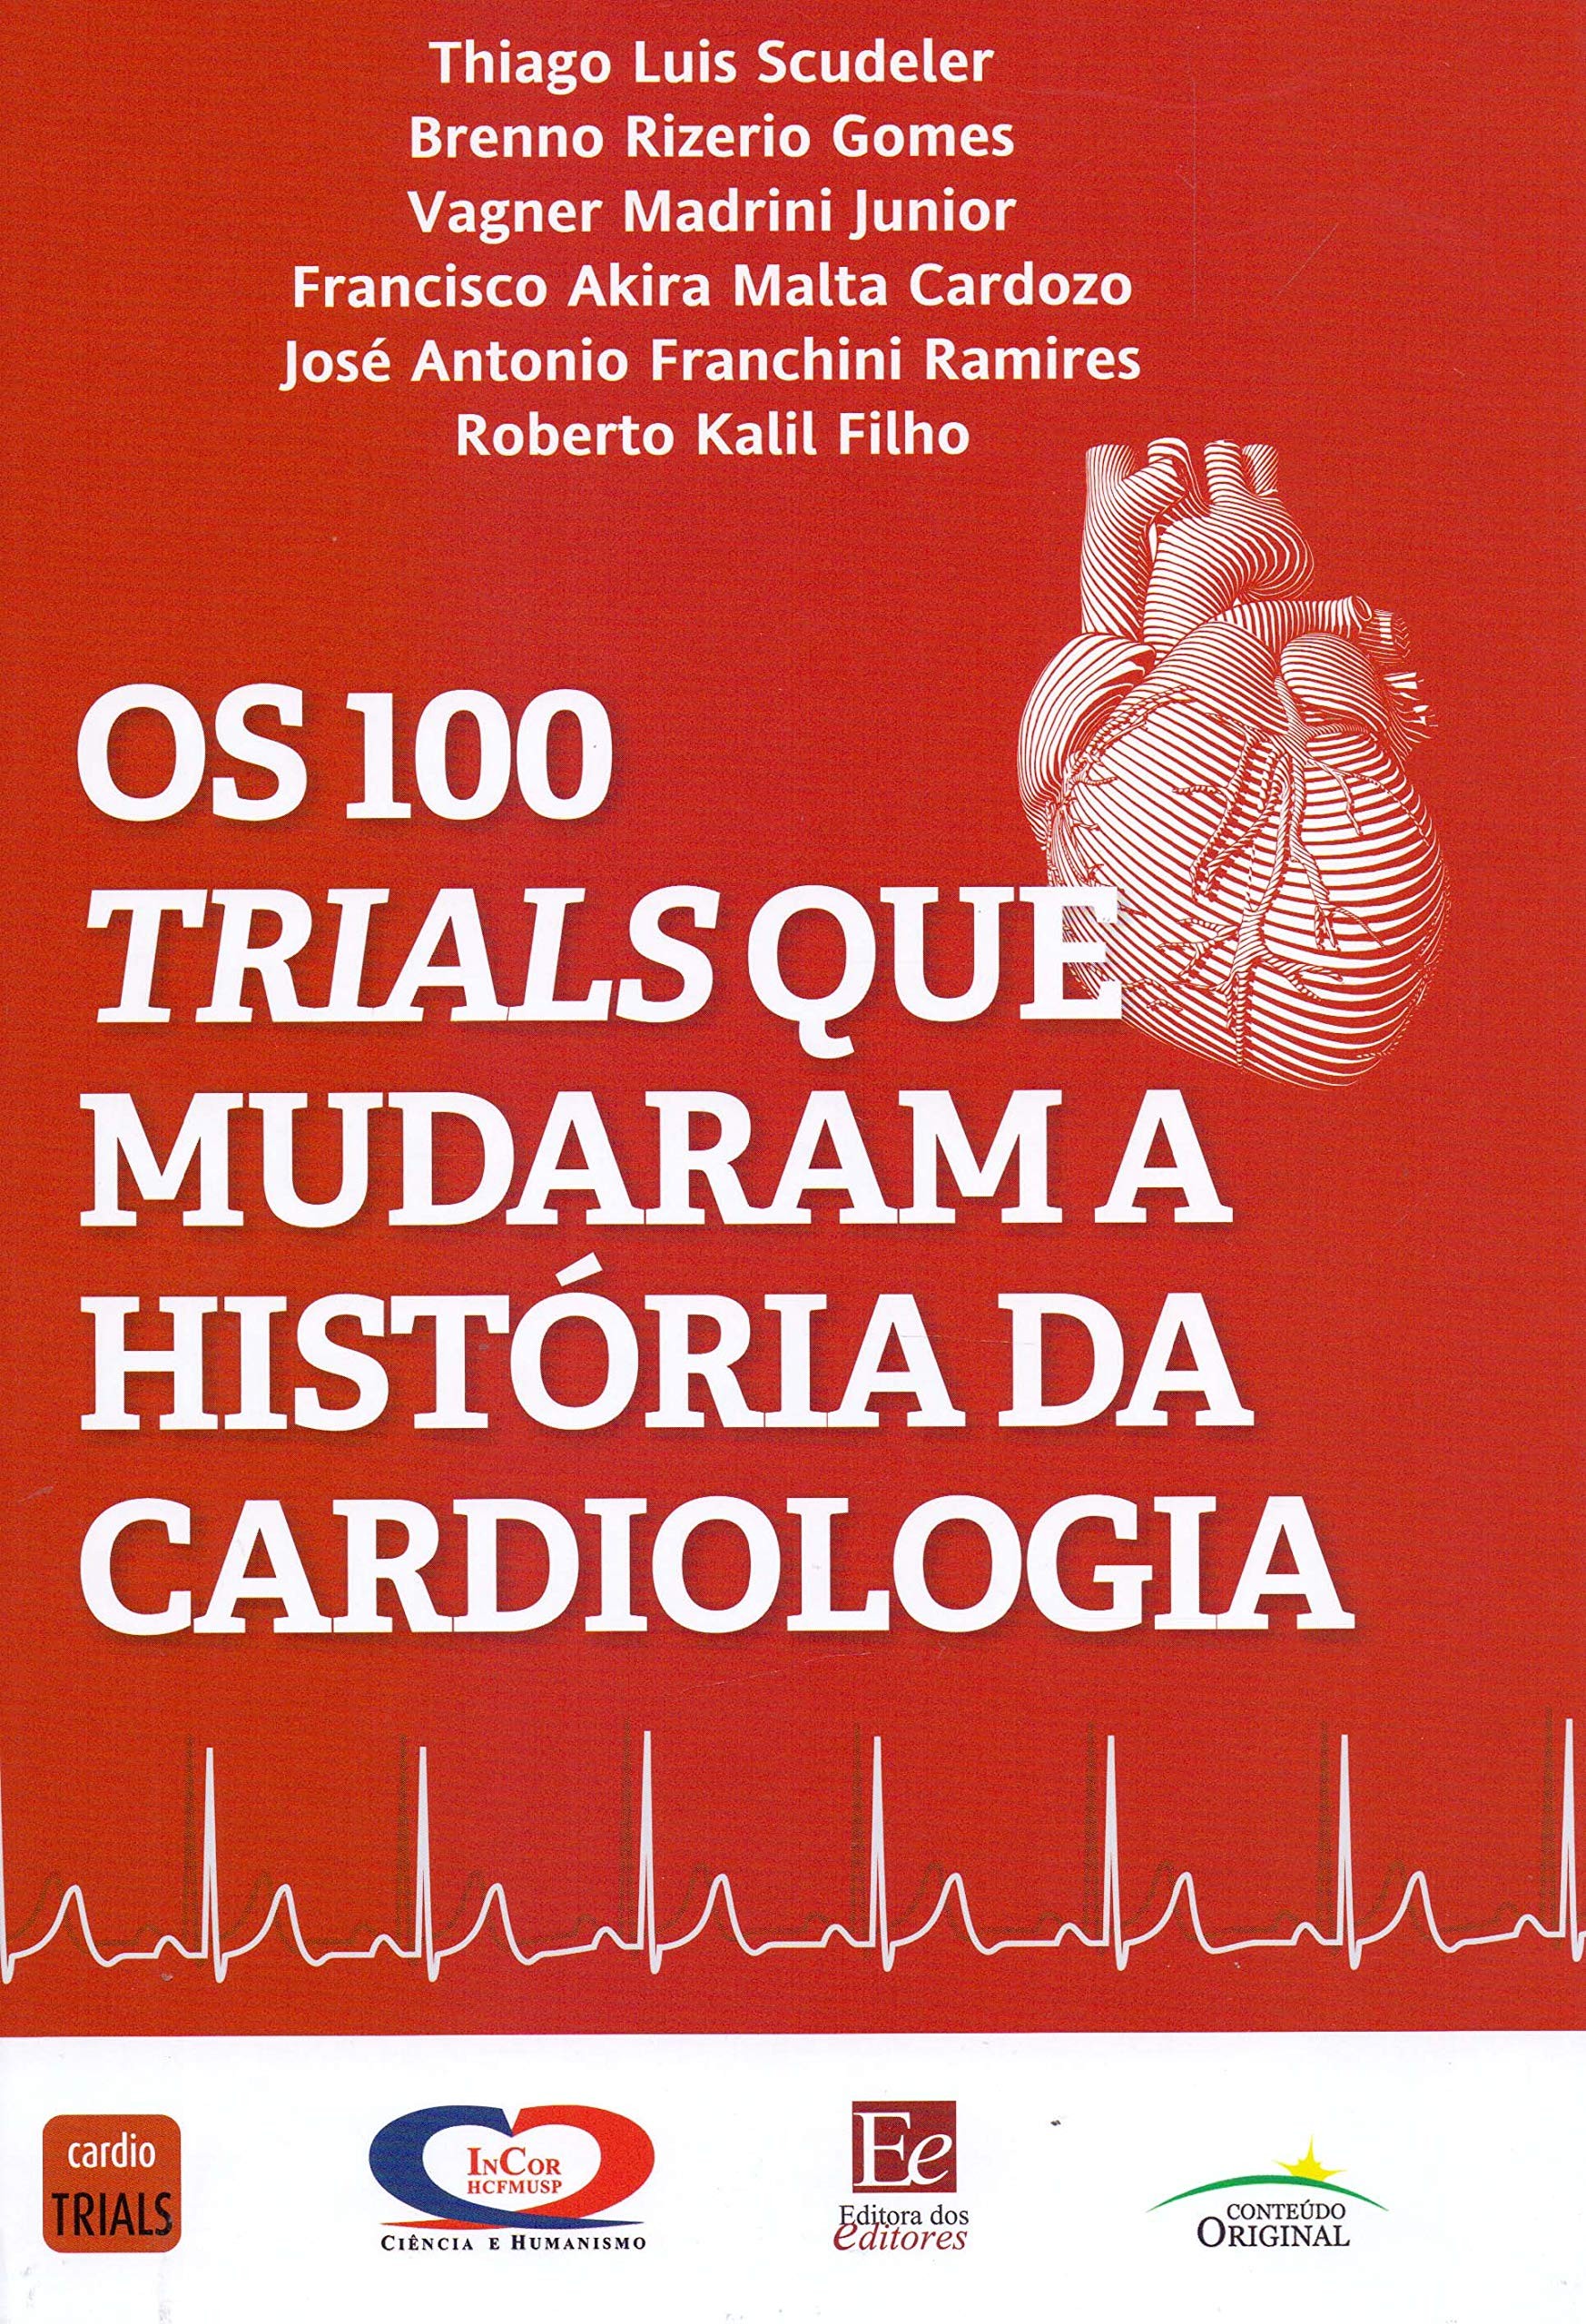 100 Trials Que Mudaram A Historia Da Cardiologia, Os